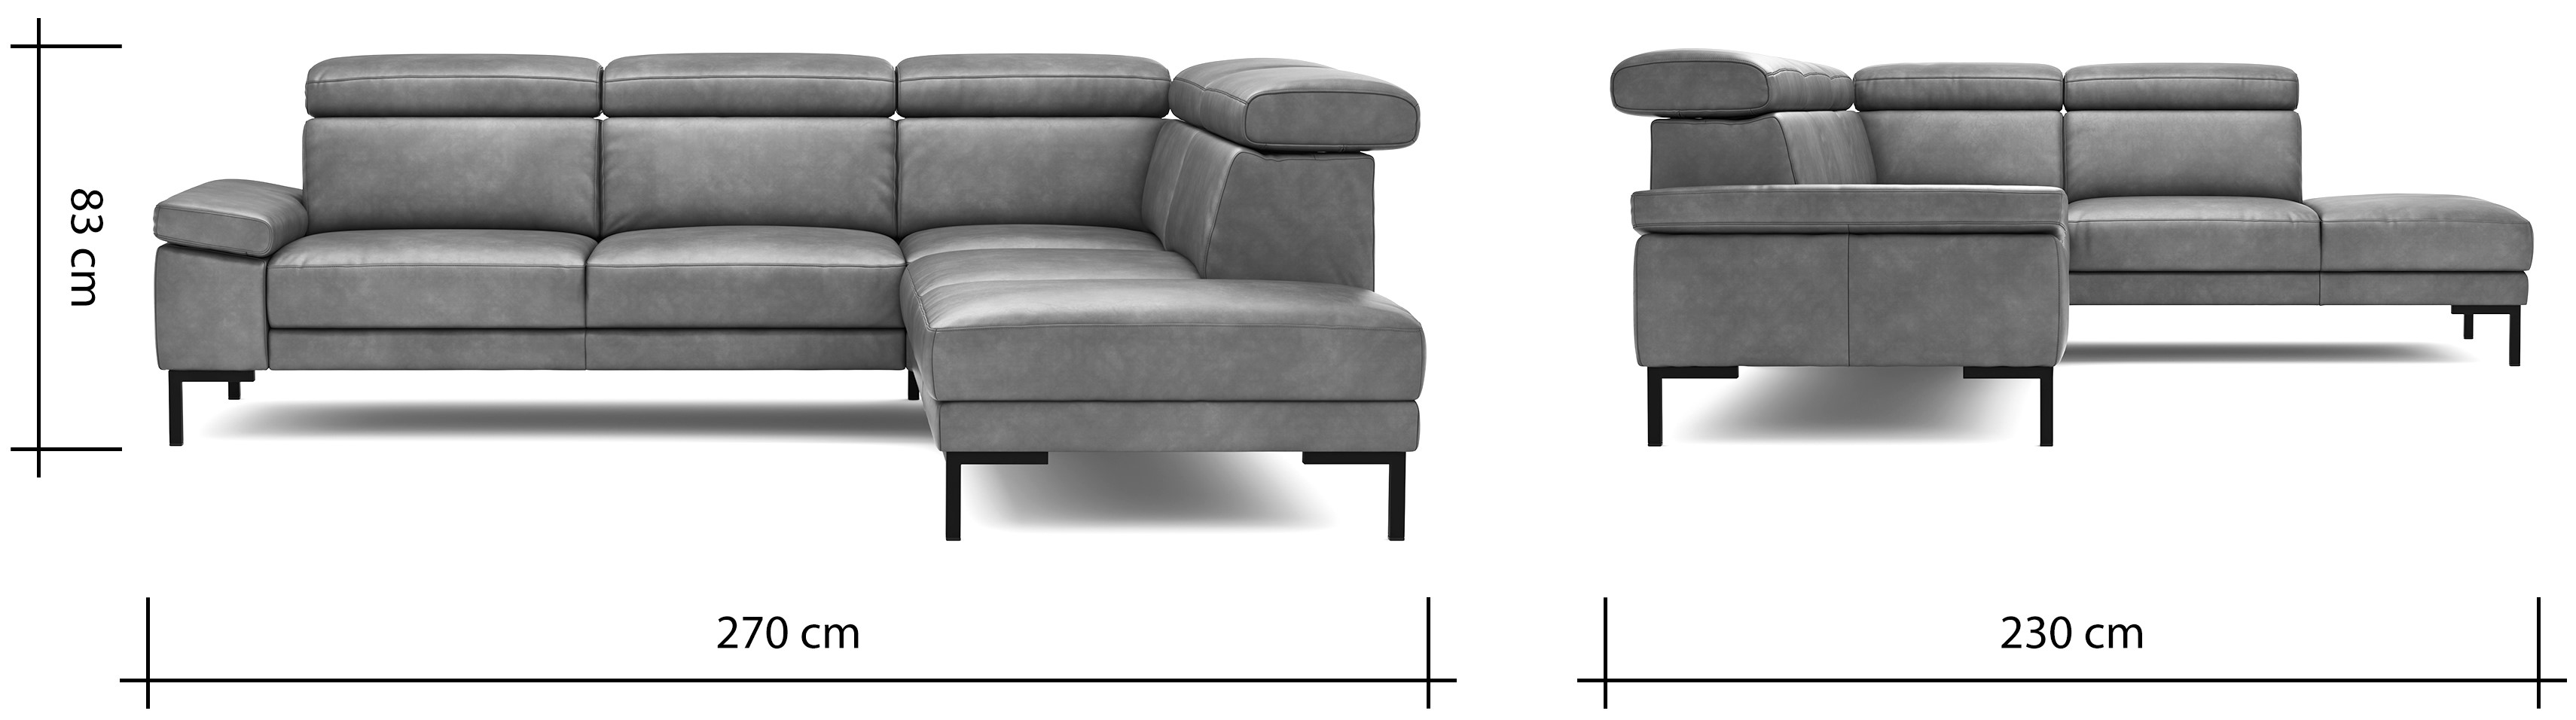 Ecksofa Hudson - 2,5-Sitzer mit Ecke rechts, inkl. Kopfteil verstellbar, Leder, Braungrün